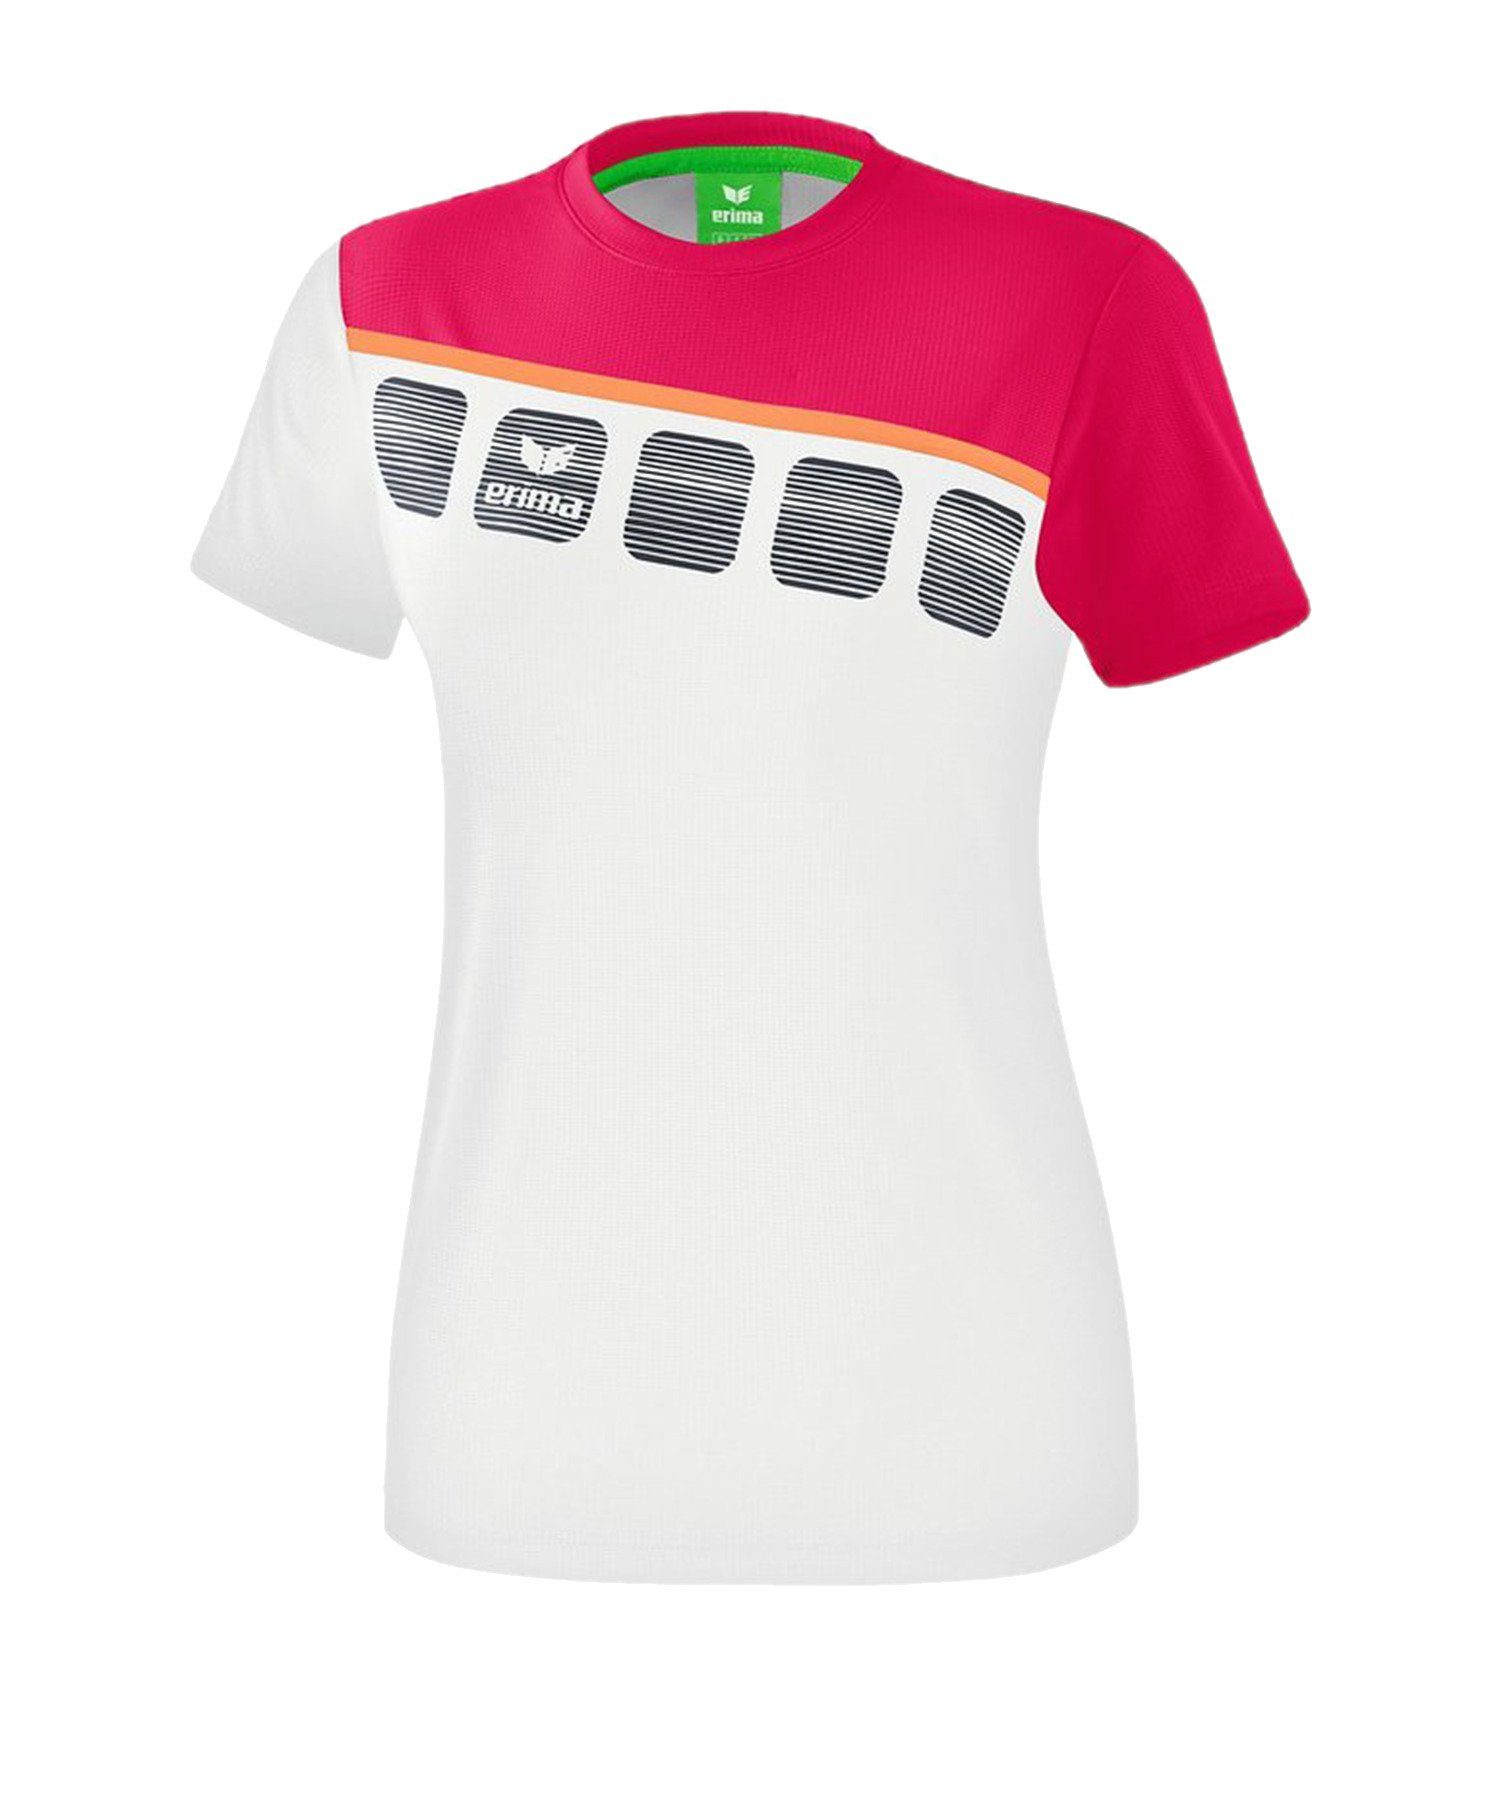 Erima T-Shirt 5-C T-Shirt Damen default Weiss